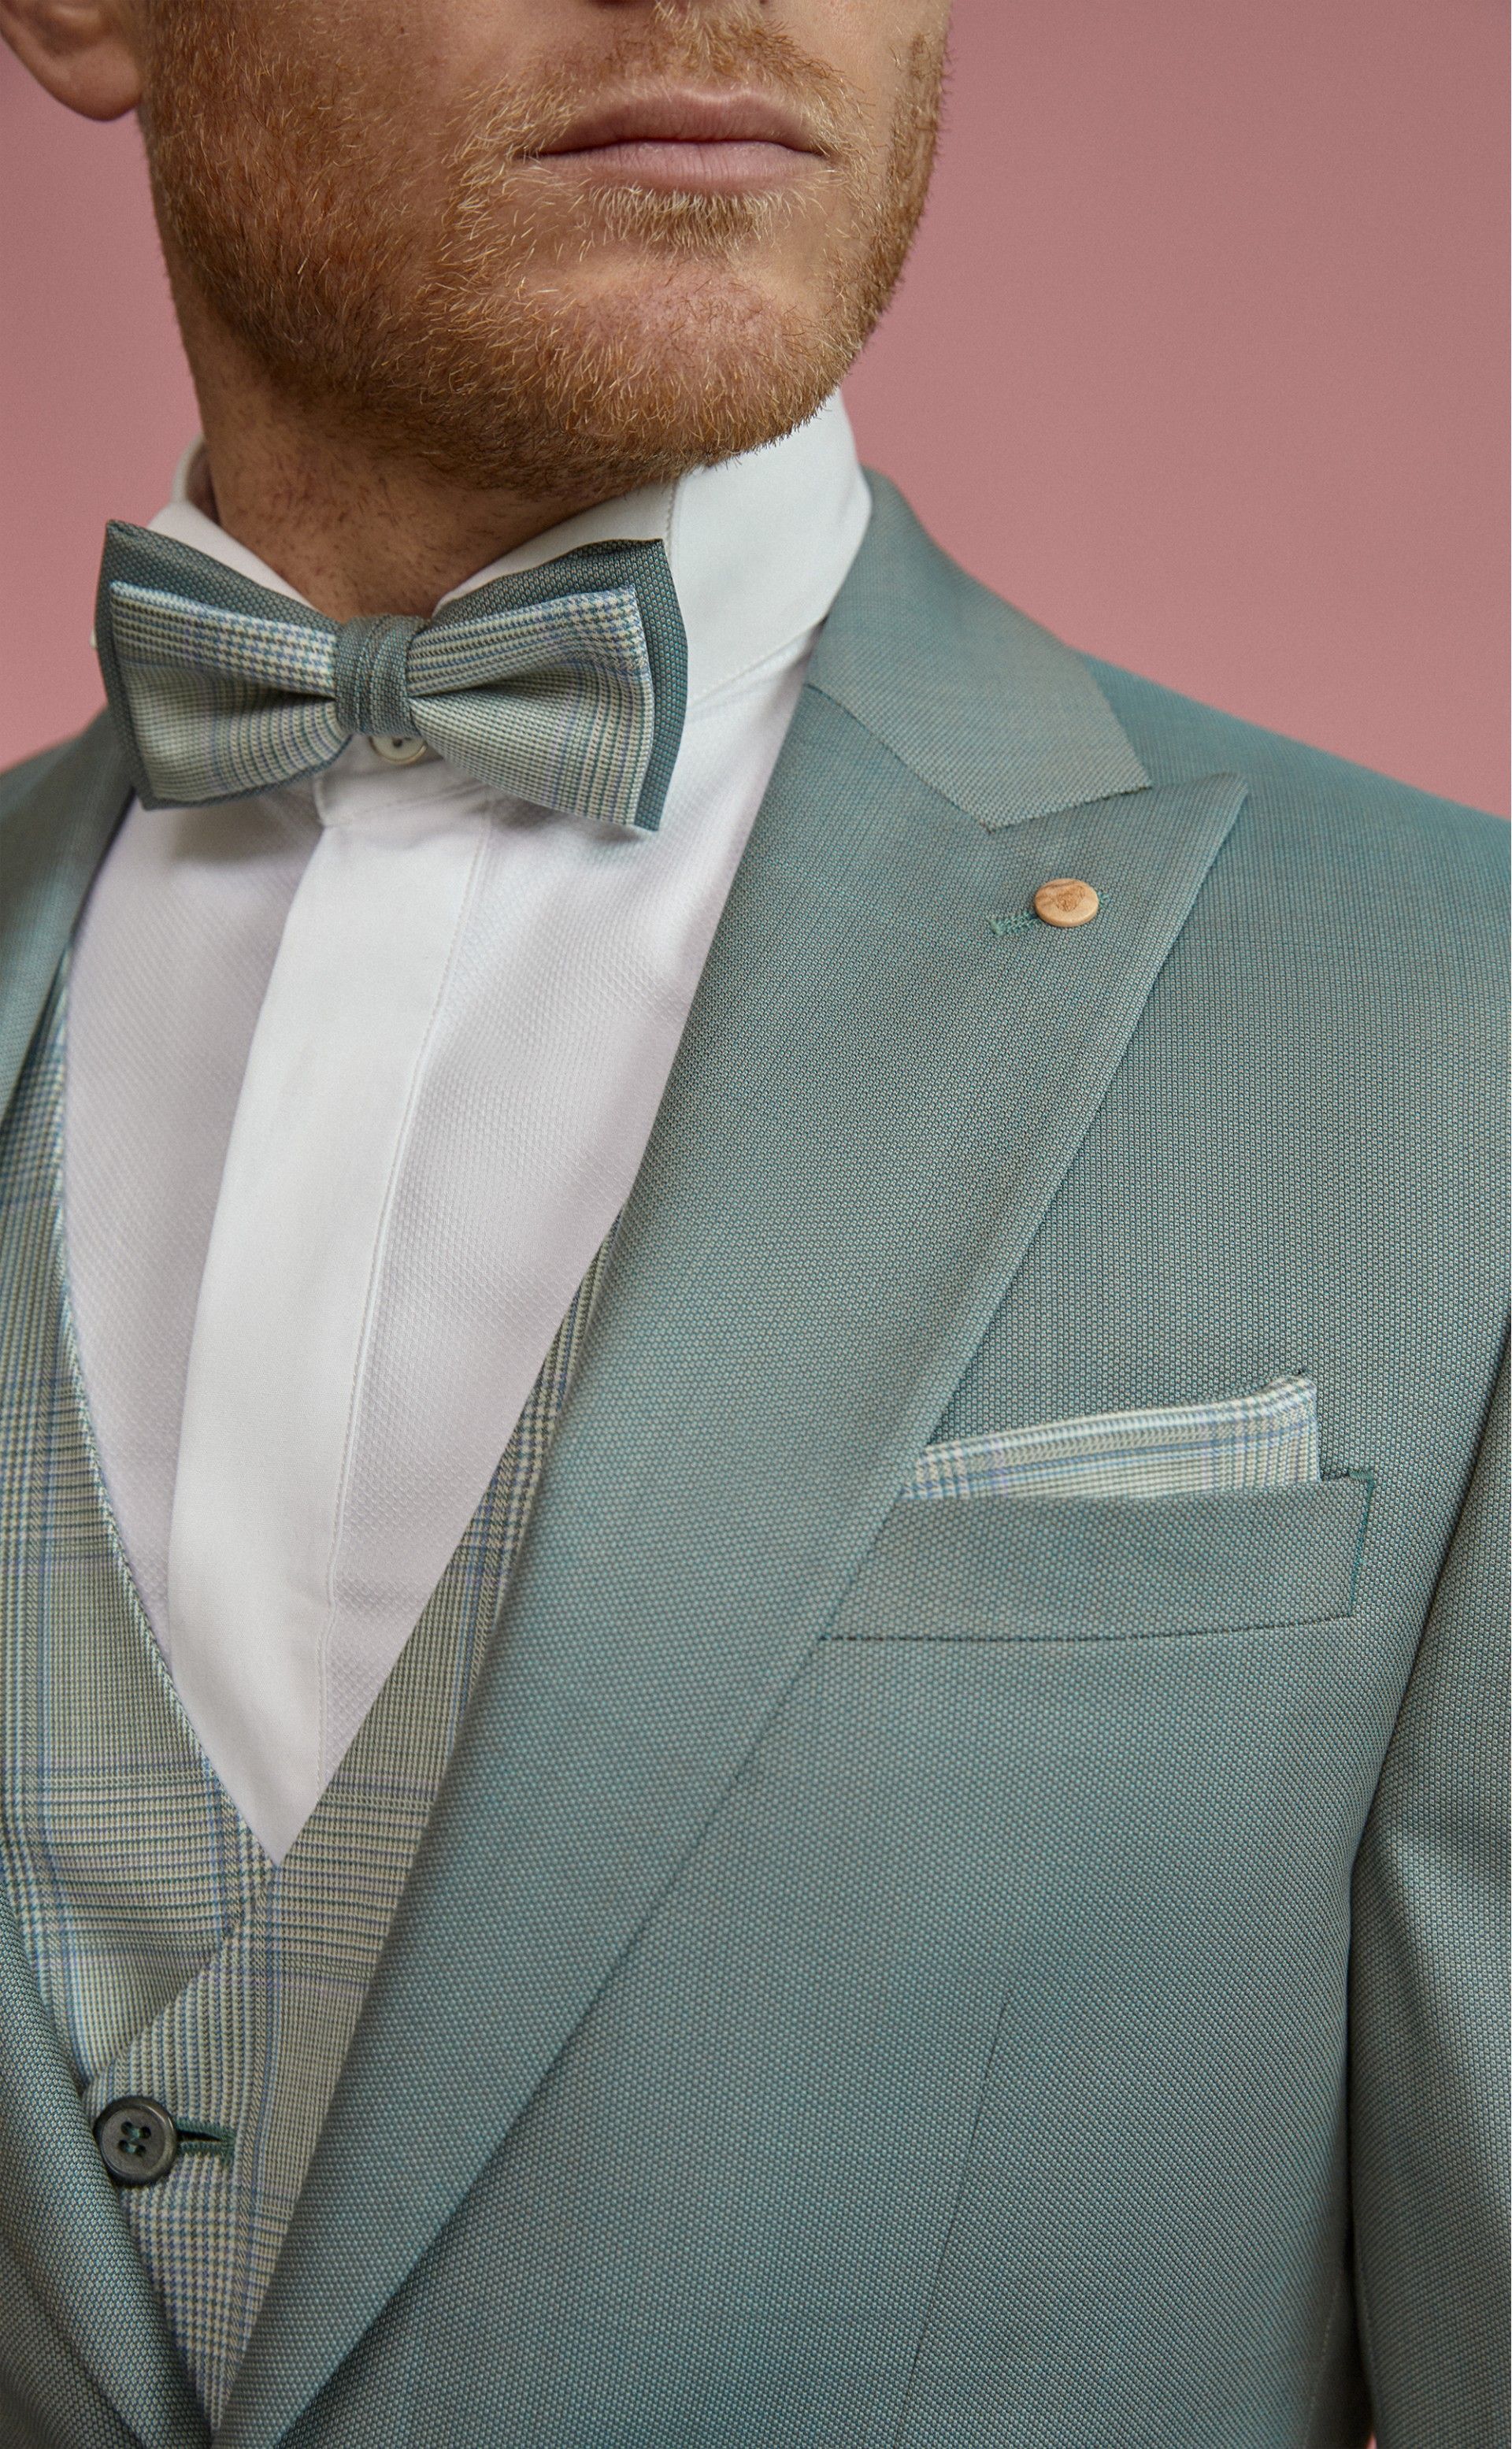 Salbeifarbener Hochzeitsanzug mit Weste und Fliege Blauer Anzug von Roberto Viccenti im Männersach' beim brautgeflüster